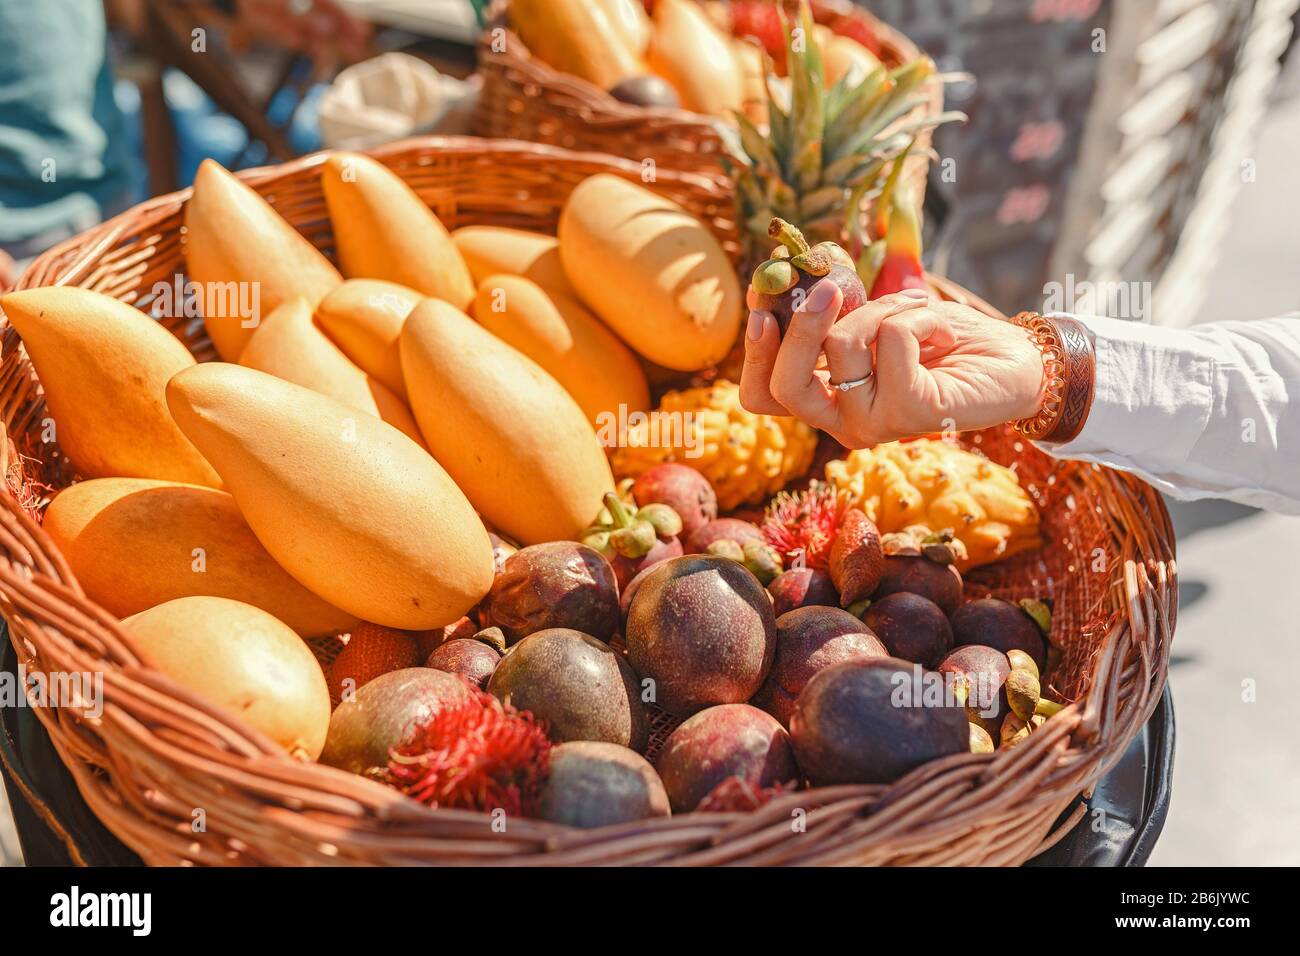 Une jeune femme sur le marché des agriculteurs choisit des fruits exotiques tropicaux comme le rambutan, la mangue et le dragon Banque D'Images